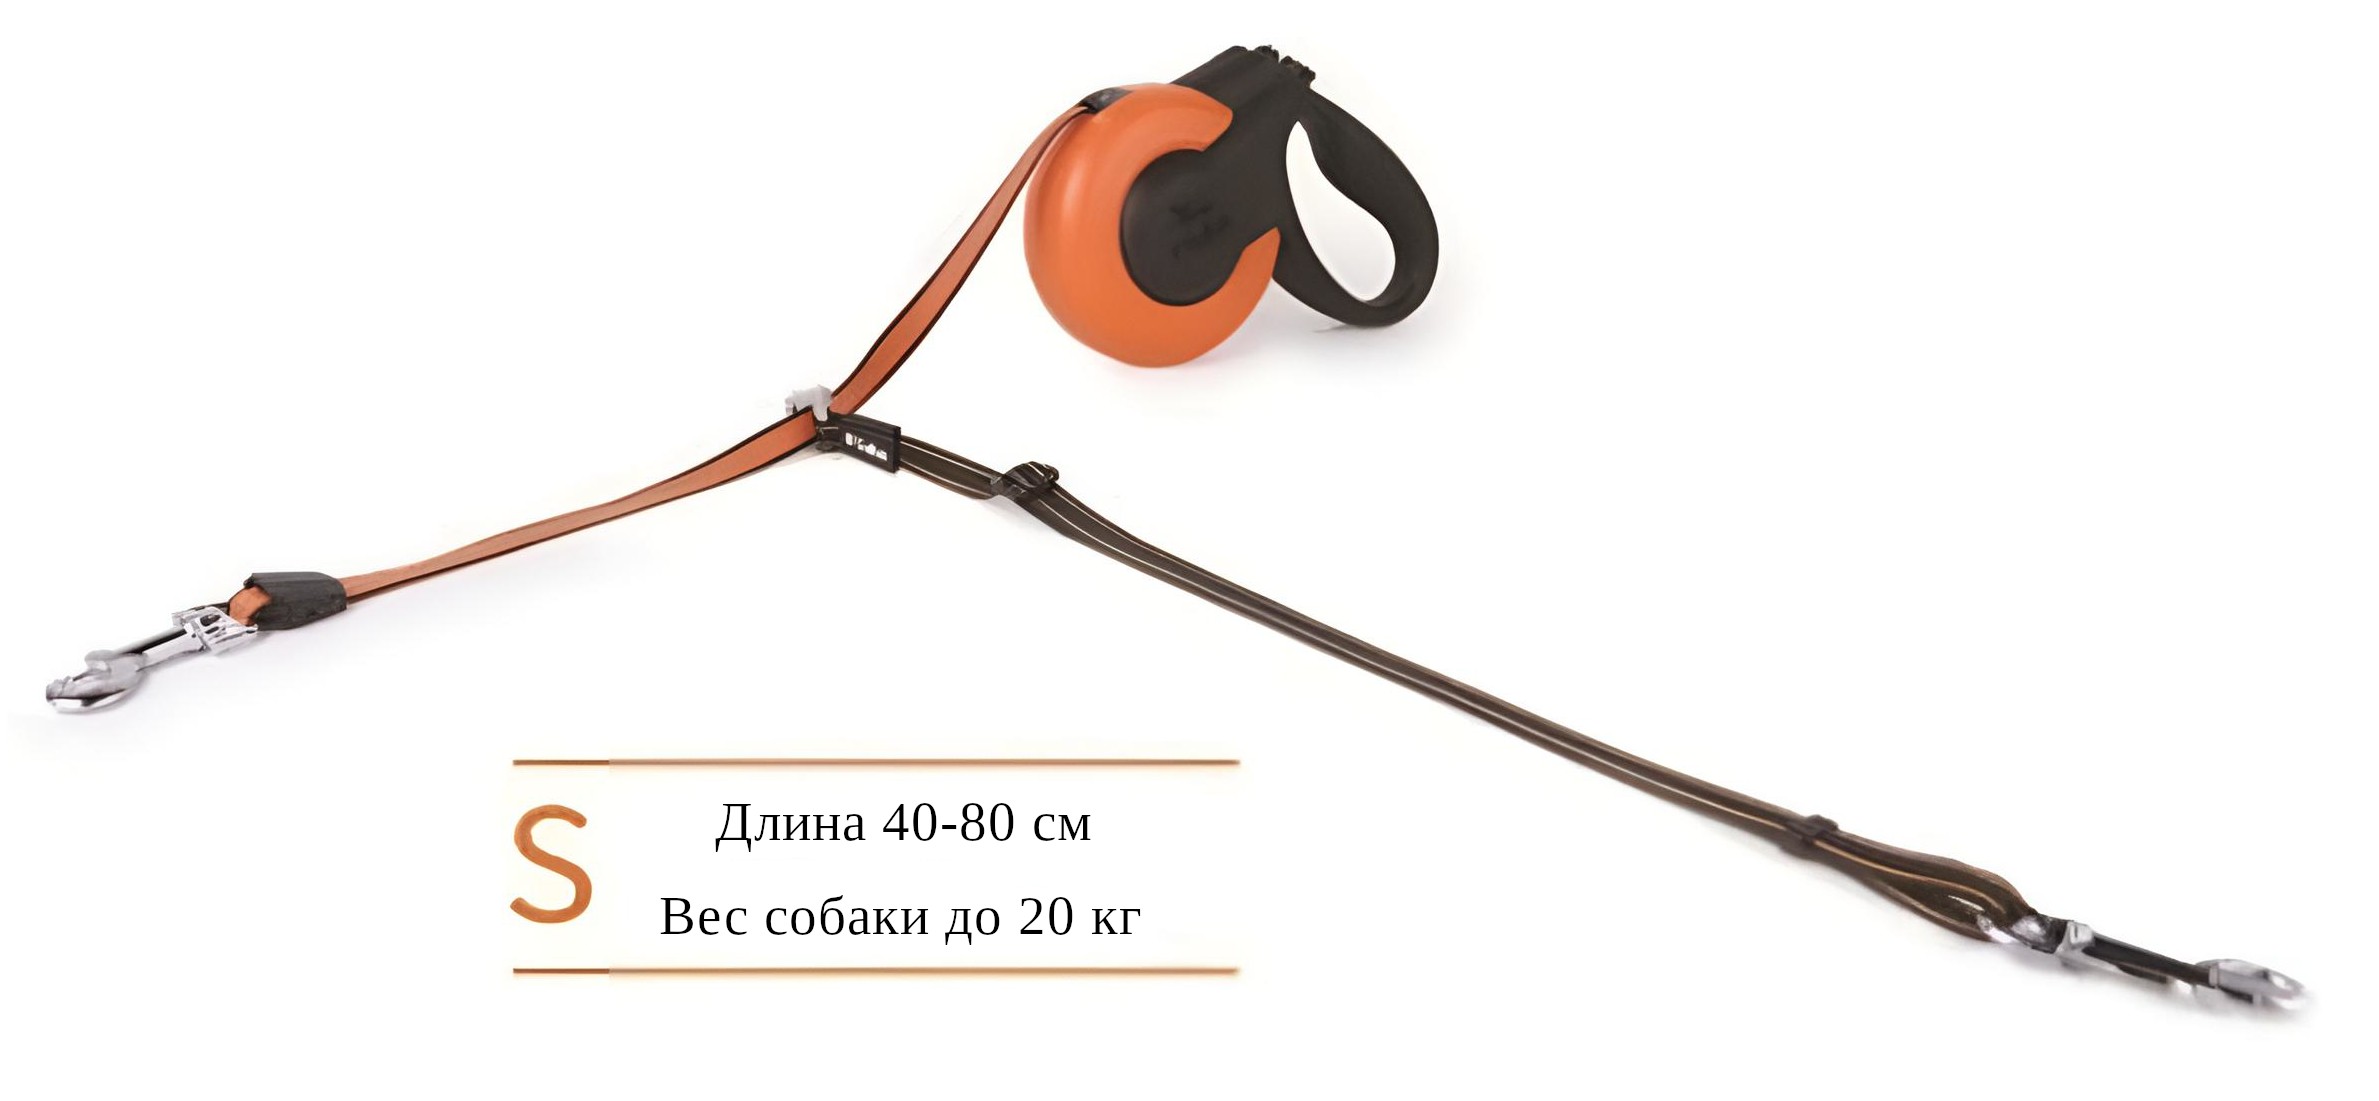 Аксессуар Fida Dual leash на рулетку со шнуром оранжевый для второй собаки  3